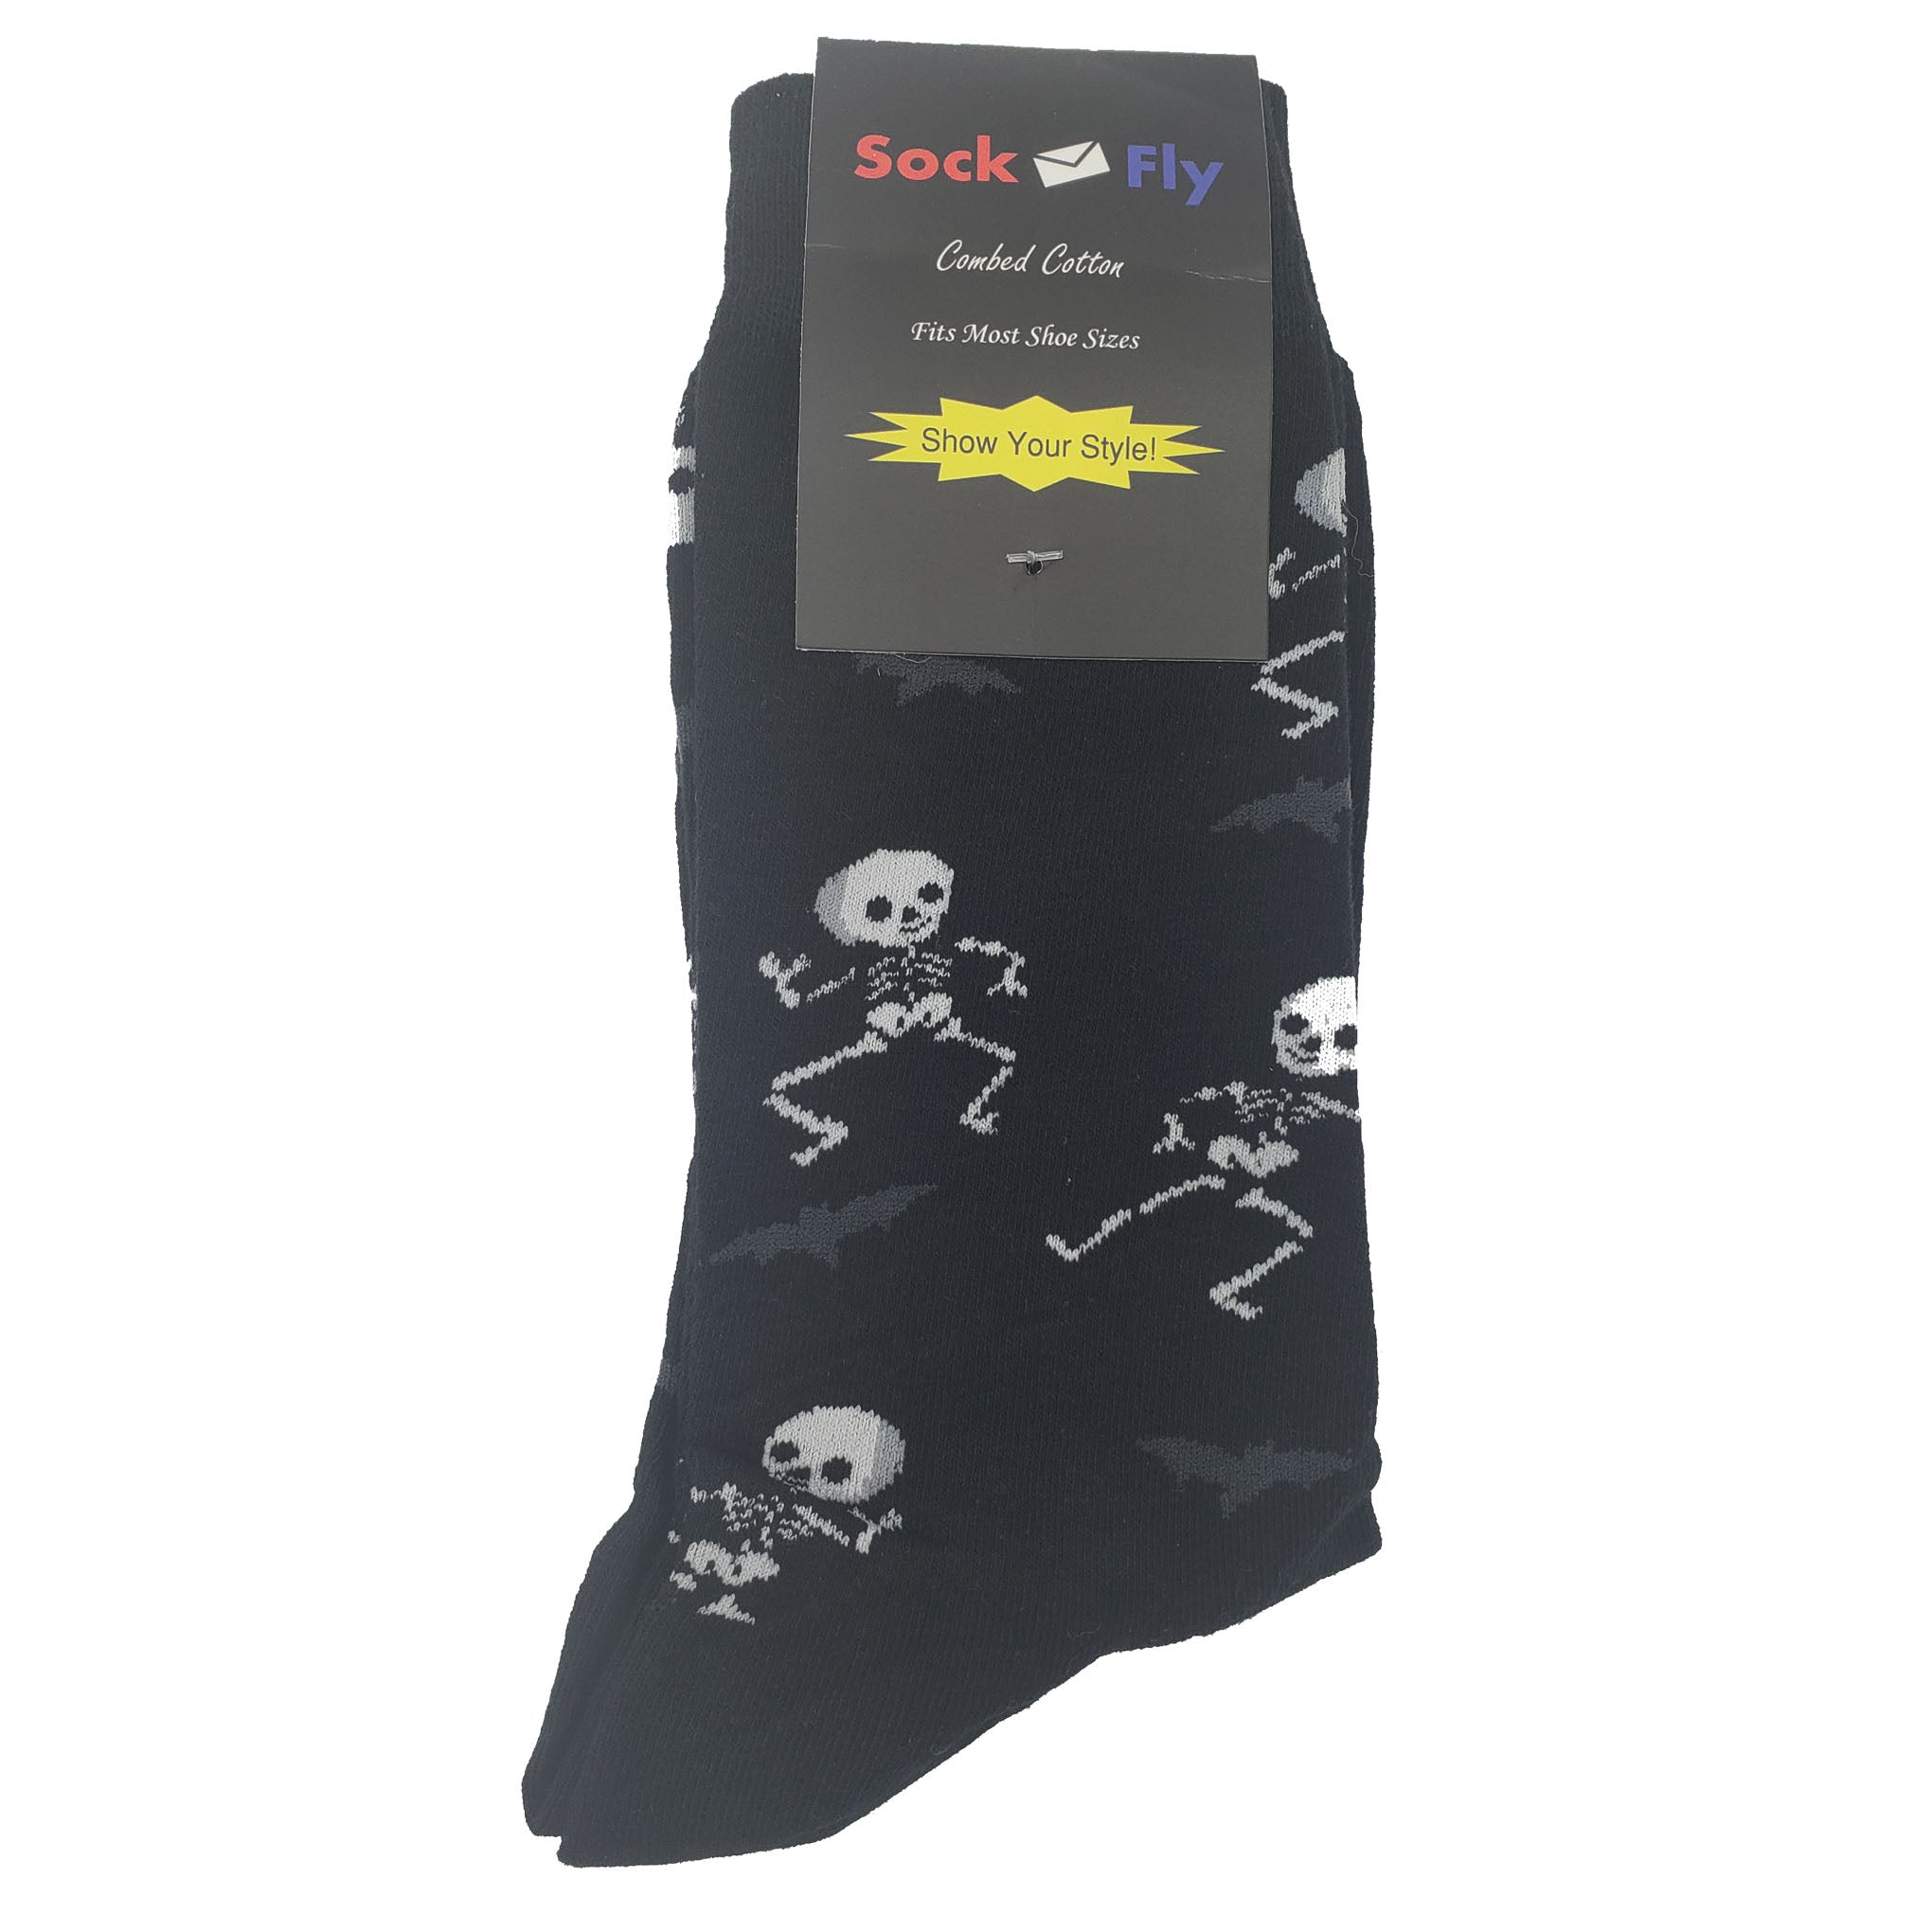 Spooky Skeleton Socks - Fun and Crazy Socks at Sockfly.com